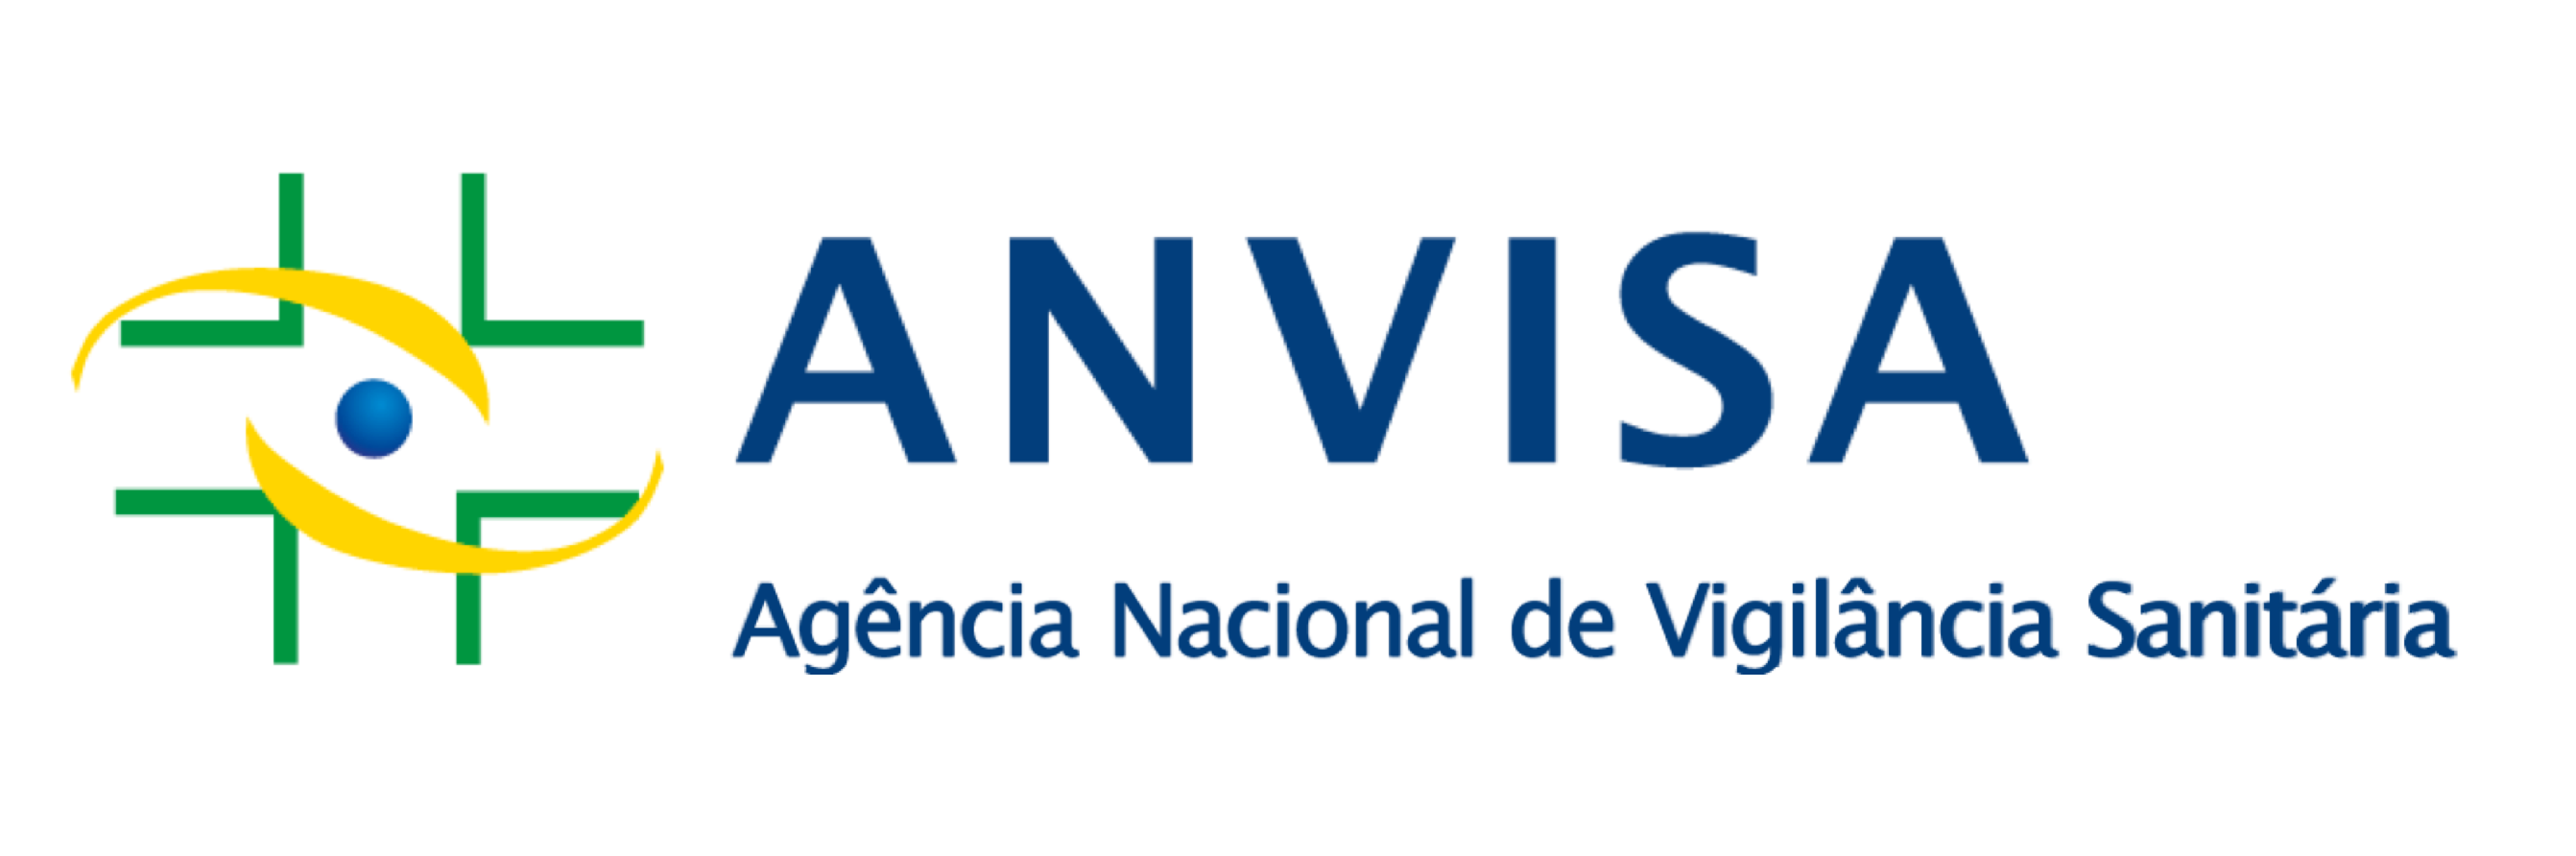 Logo.Anvisa